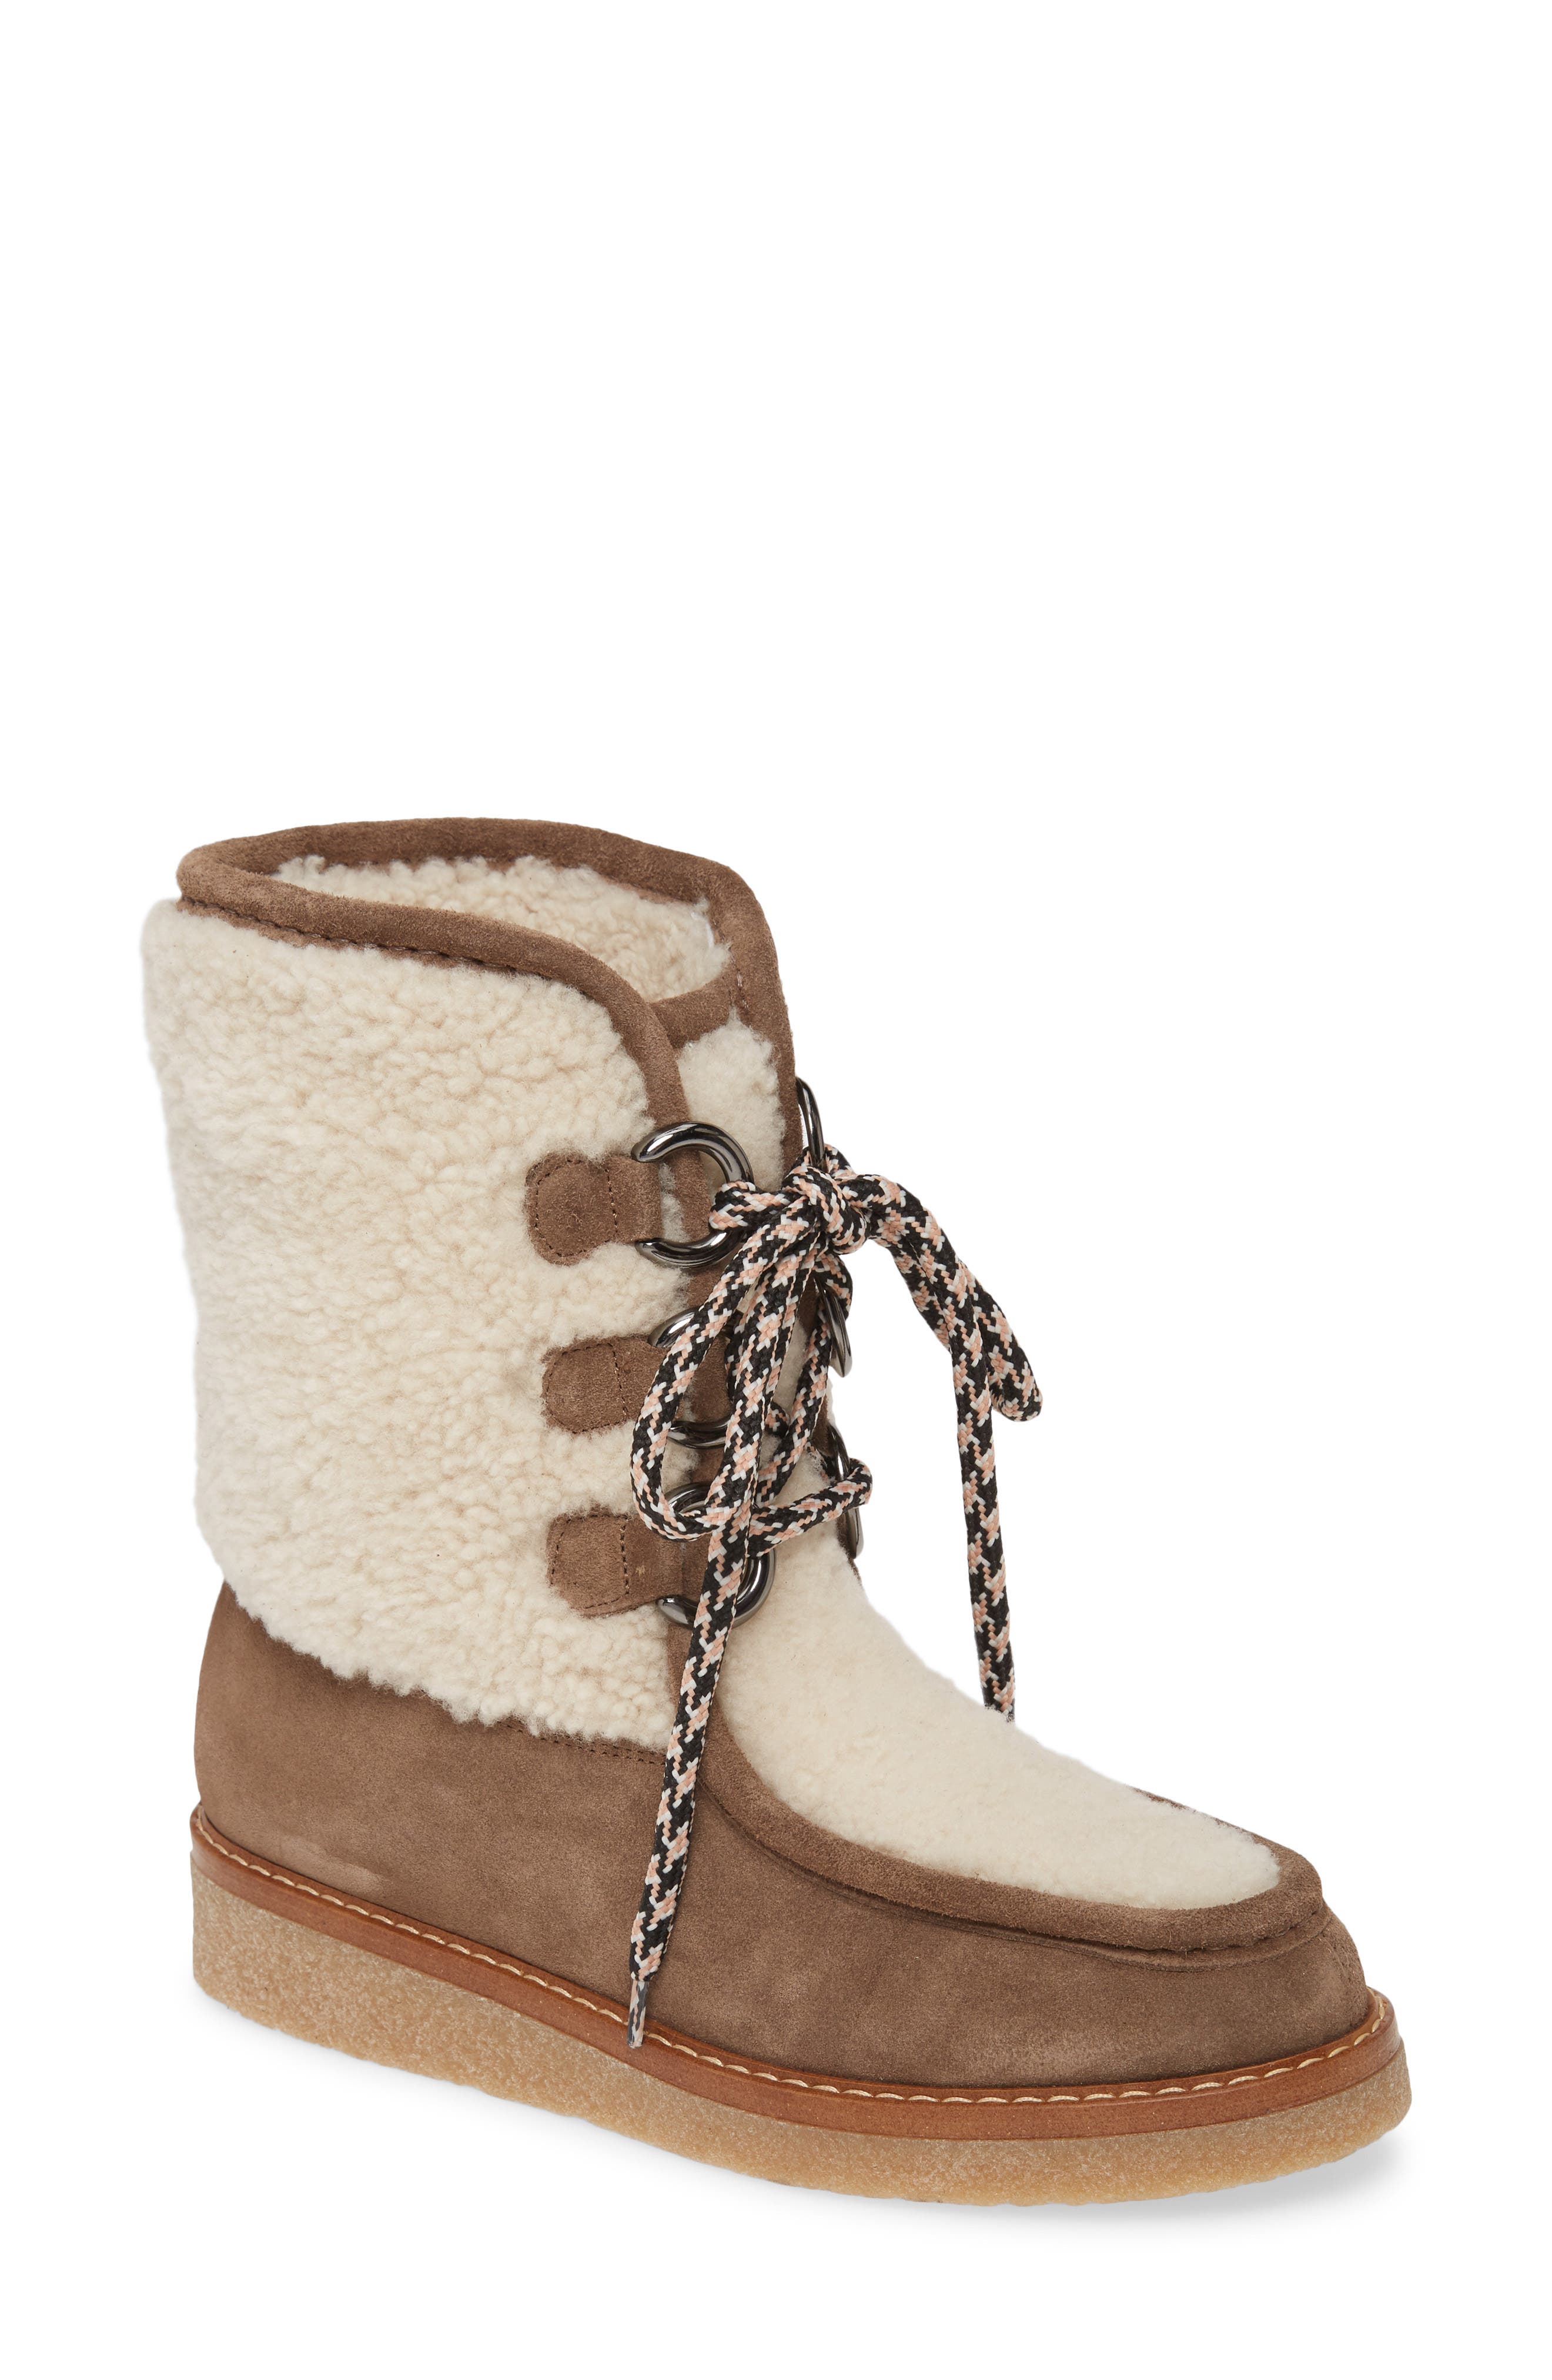 aquatalia winter boots